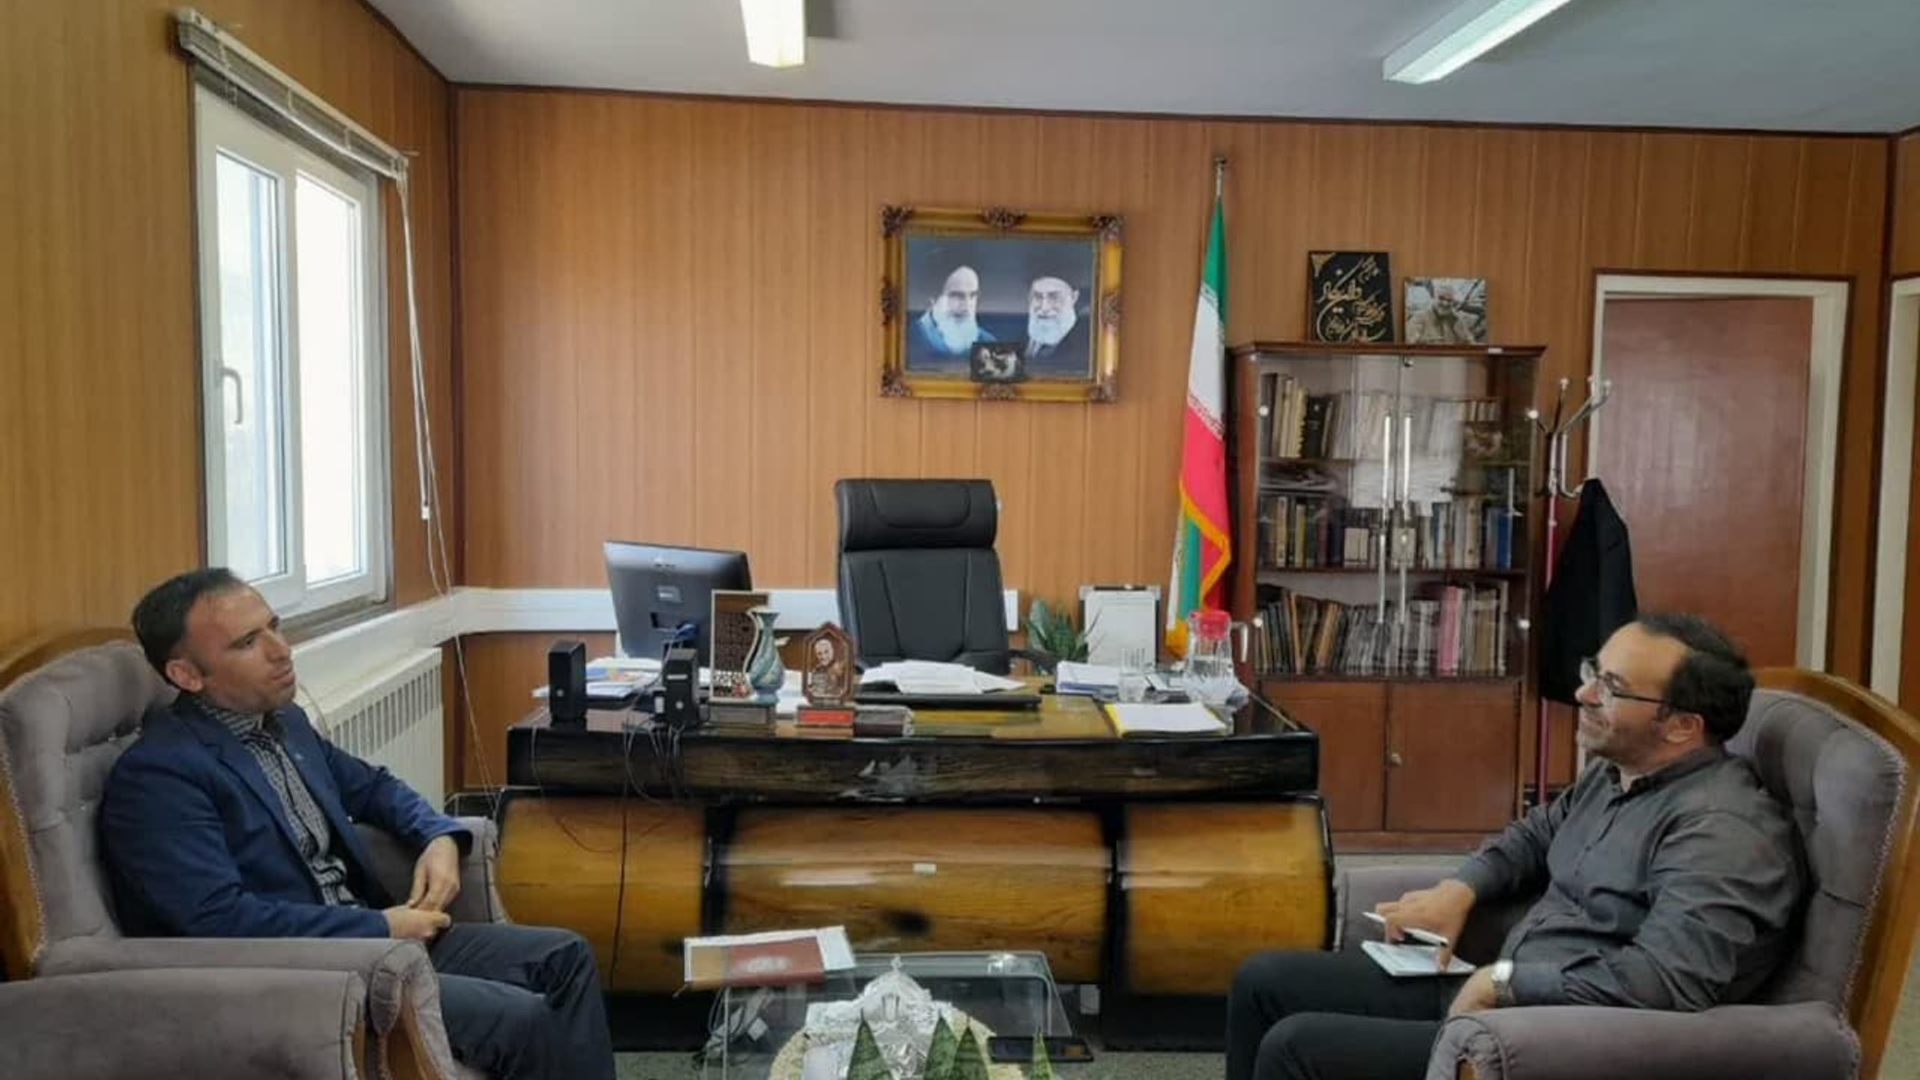 صادقی رئیس اداره منابع آب با جواد اتابکی سرپرست فرمانداری شهرستان تفرش در دفتر فرمانداری دیدار کرد.